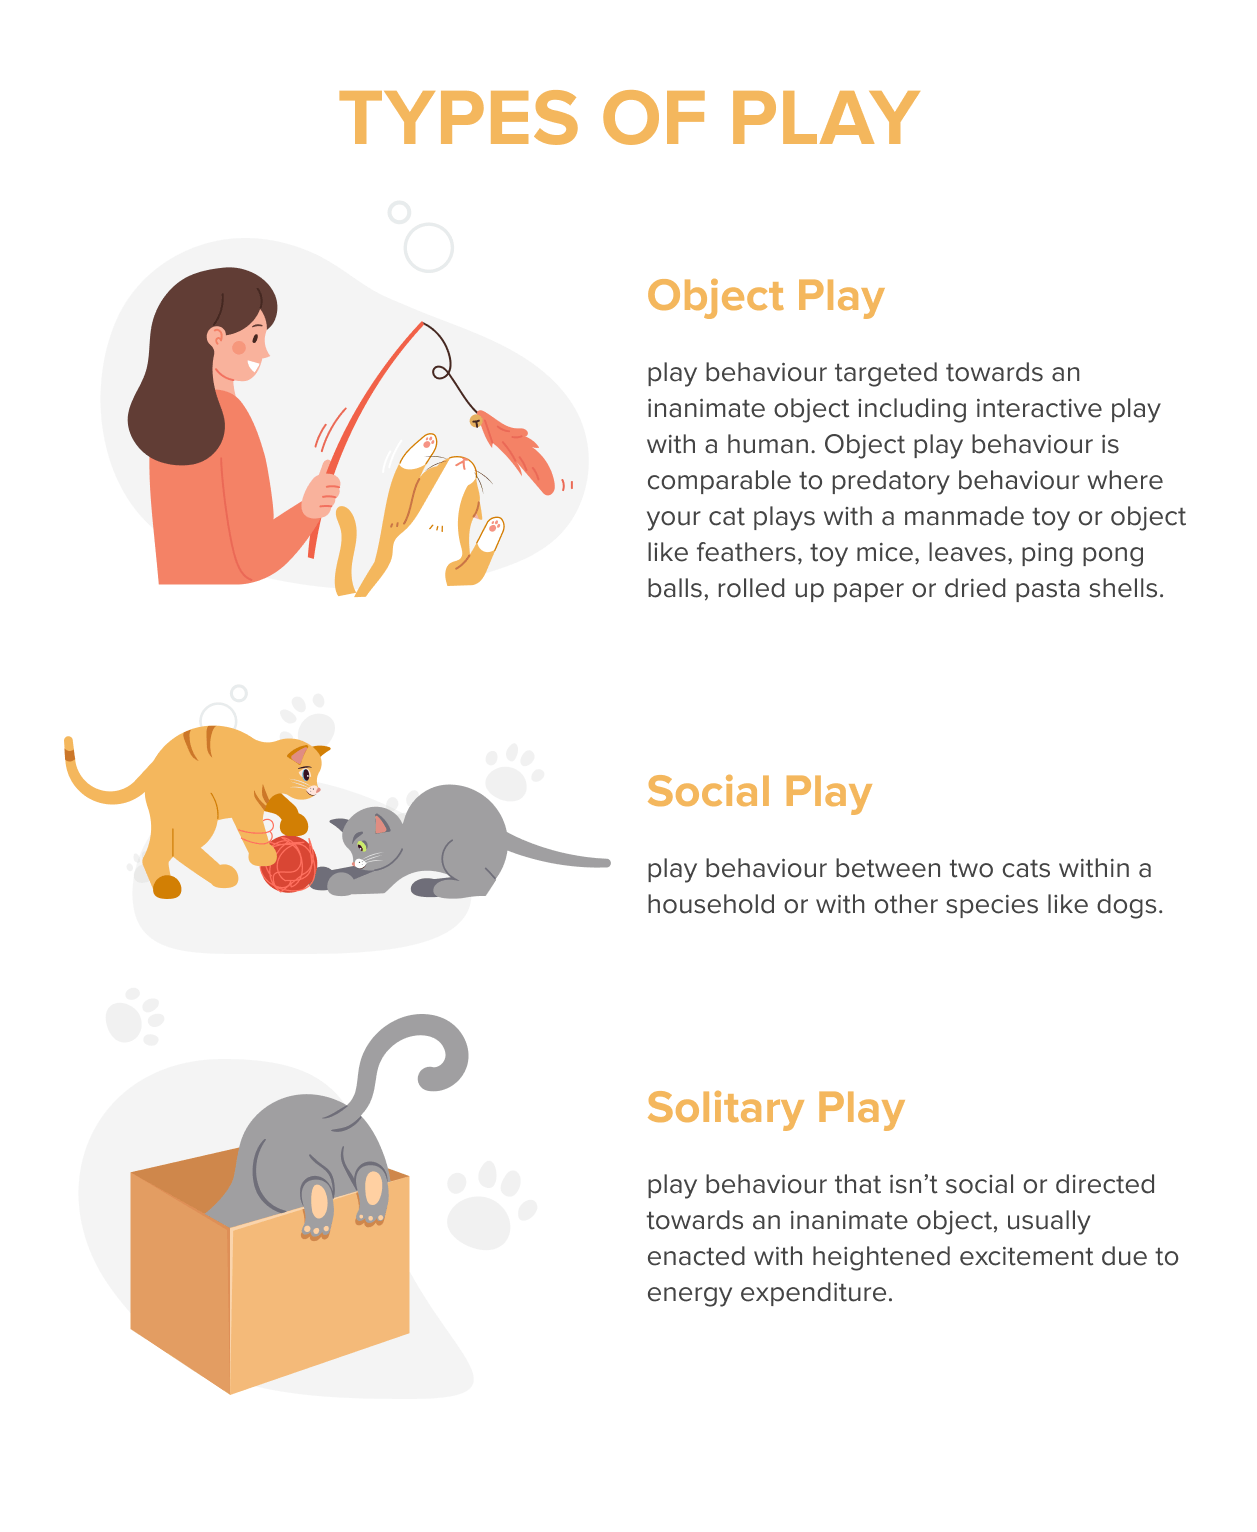 Como brincar com segurança com um gato, de acordo com um especialista em comportamento de gatos